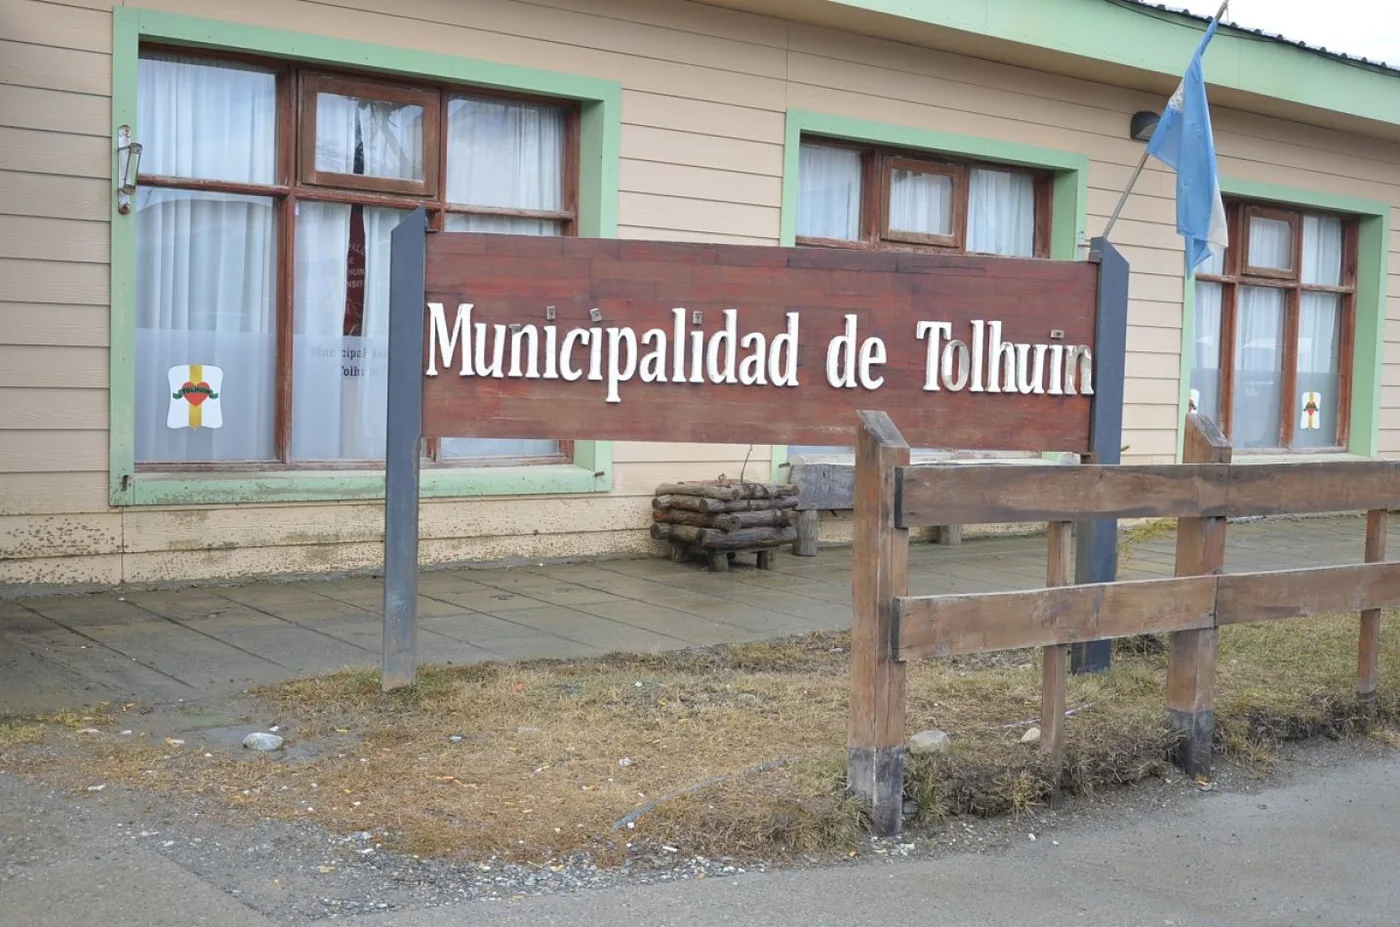 El intendente mantuvo un encuentro con los vecinos por el presunto violador alojado en Tolhuin.